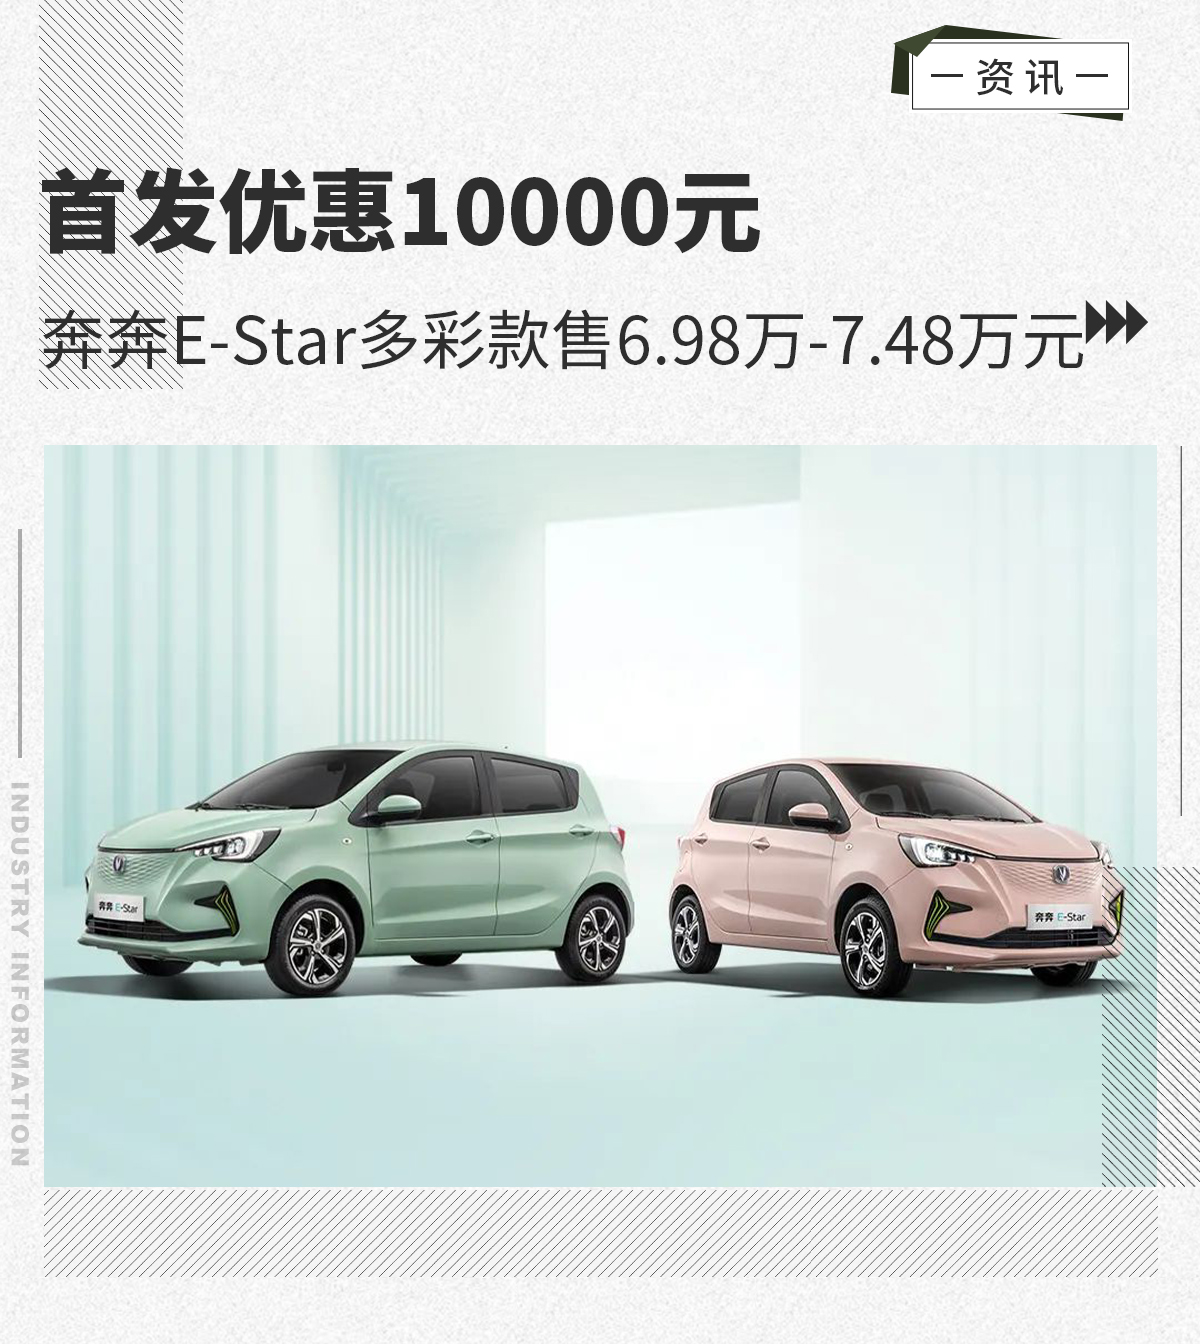 奔奔E-Star多彩款上市 三种配色/售6.98万元起